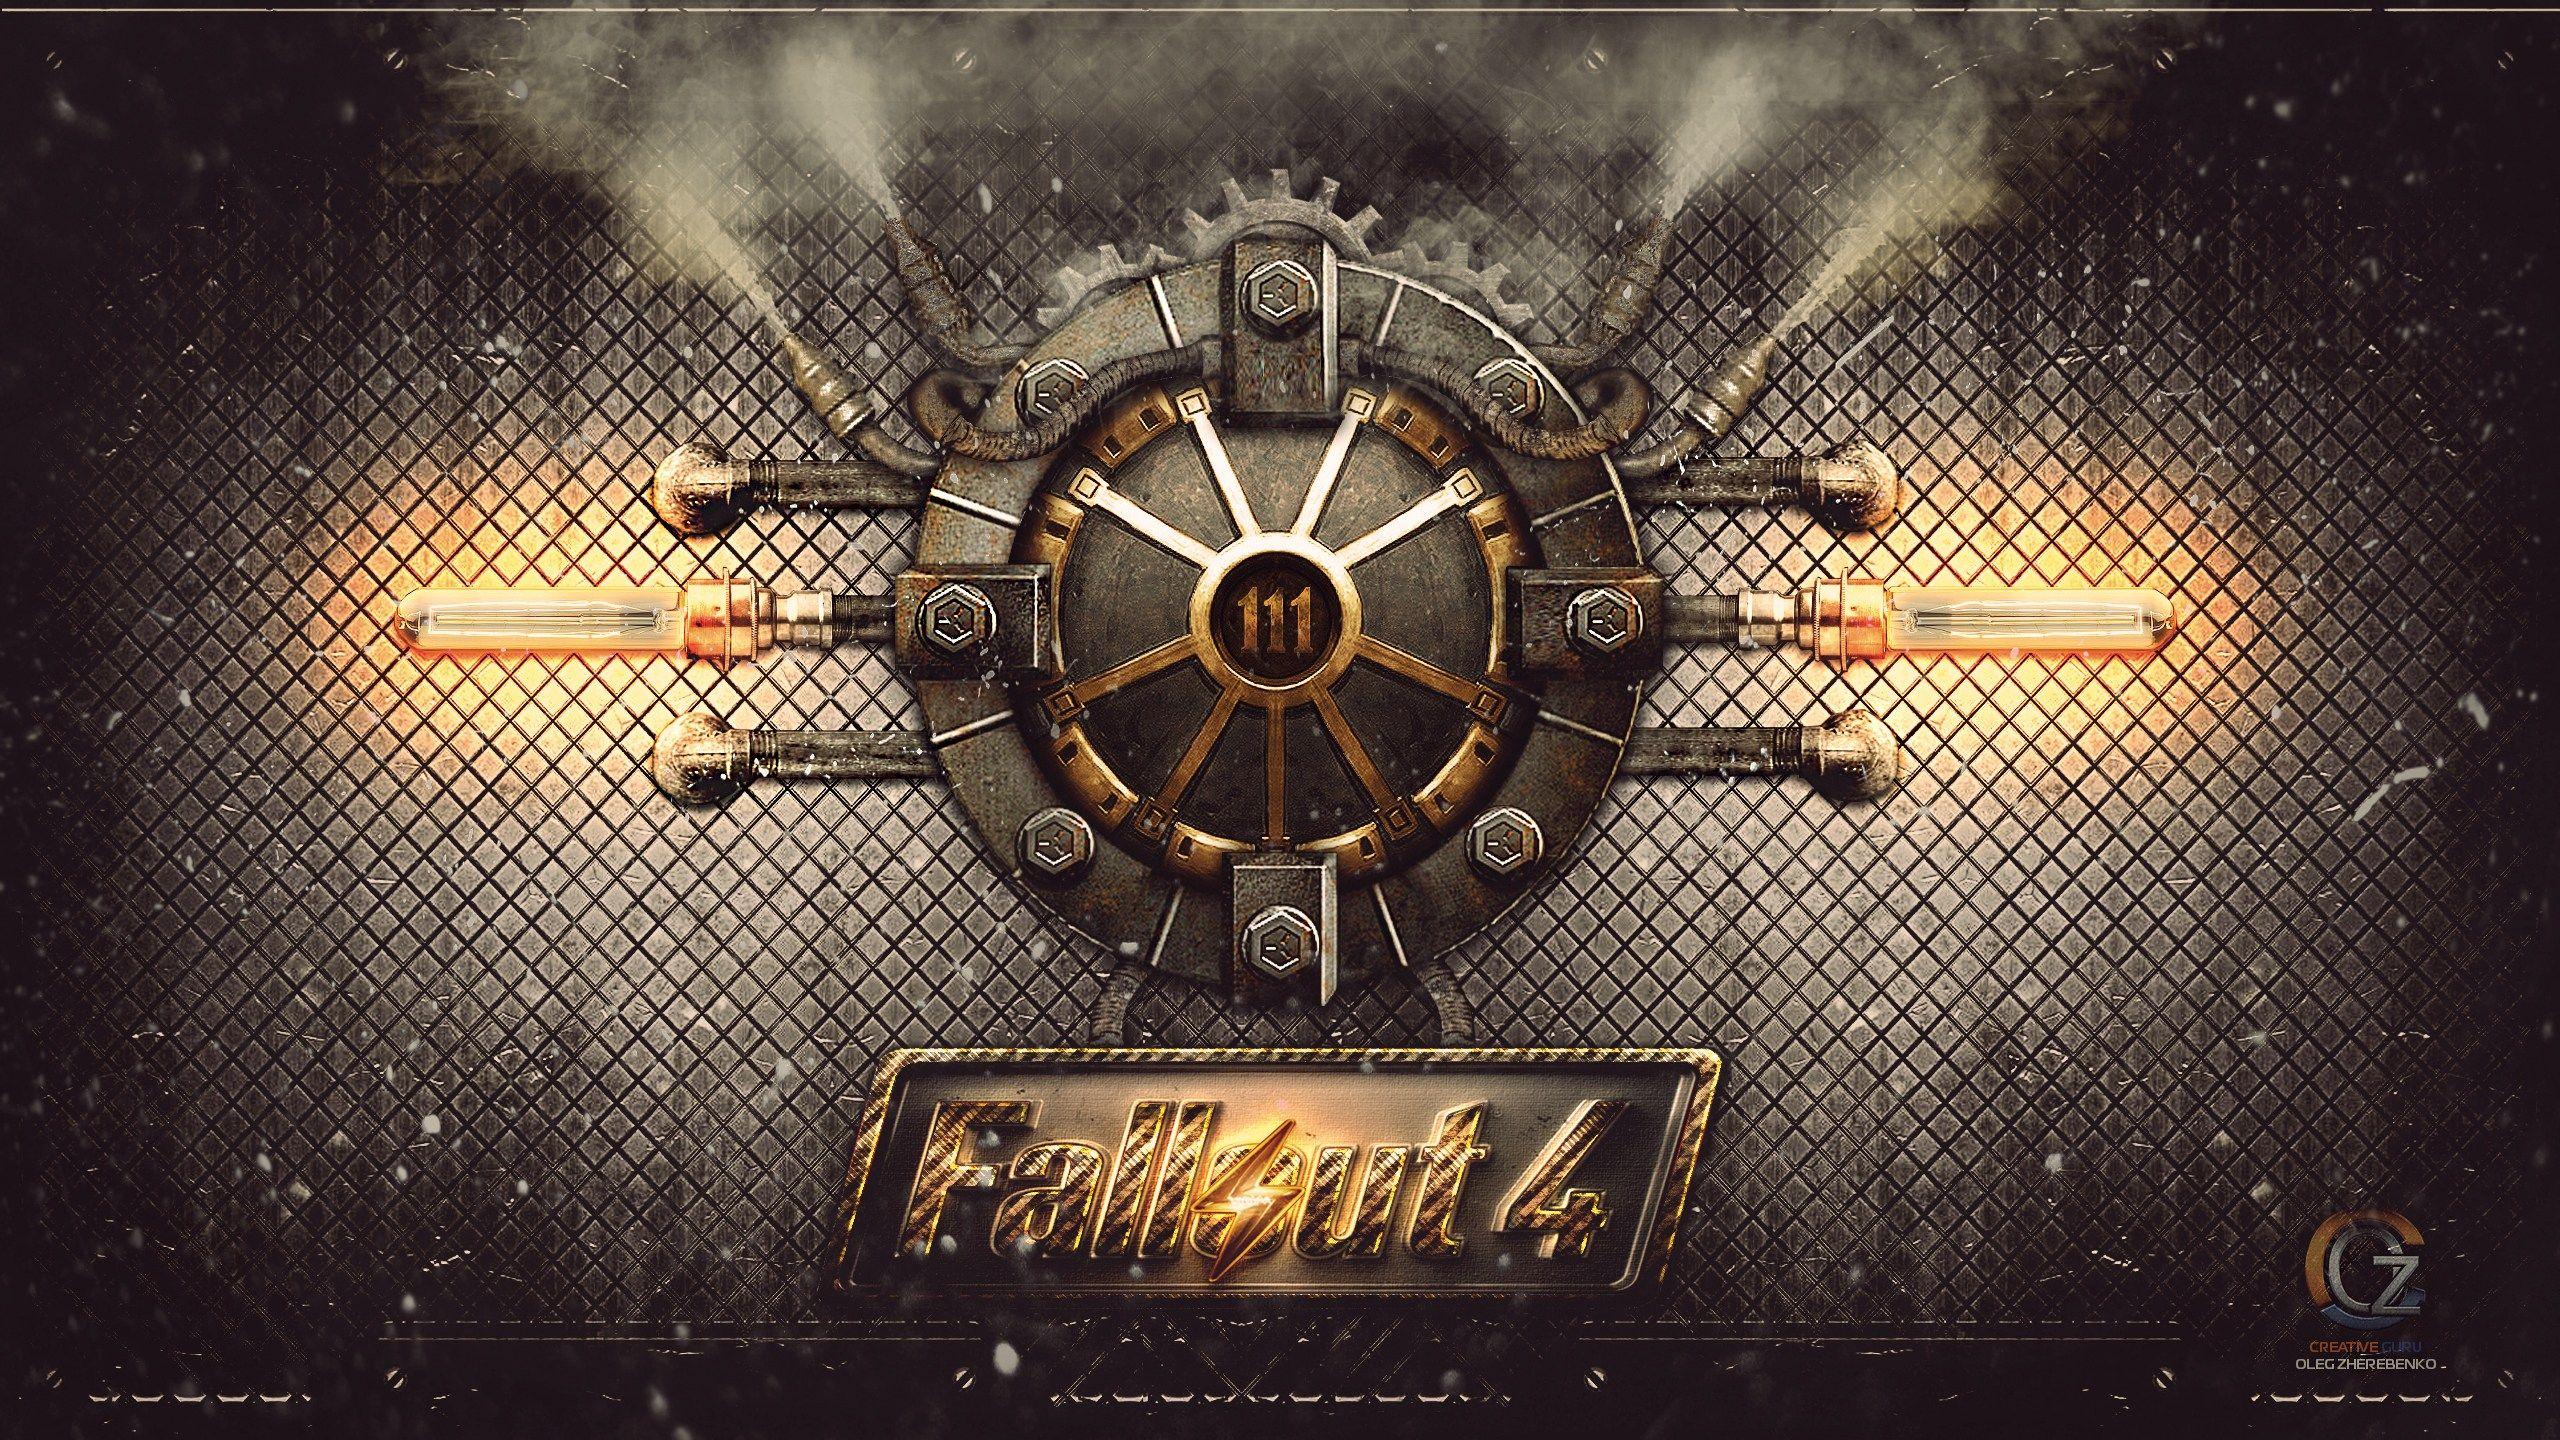 Fallout 4 Wallpaper. Free Download 4K Fallout 4 Wallpaper